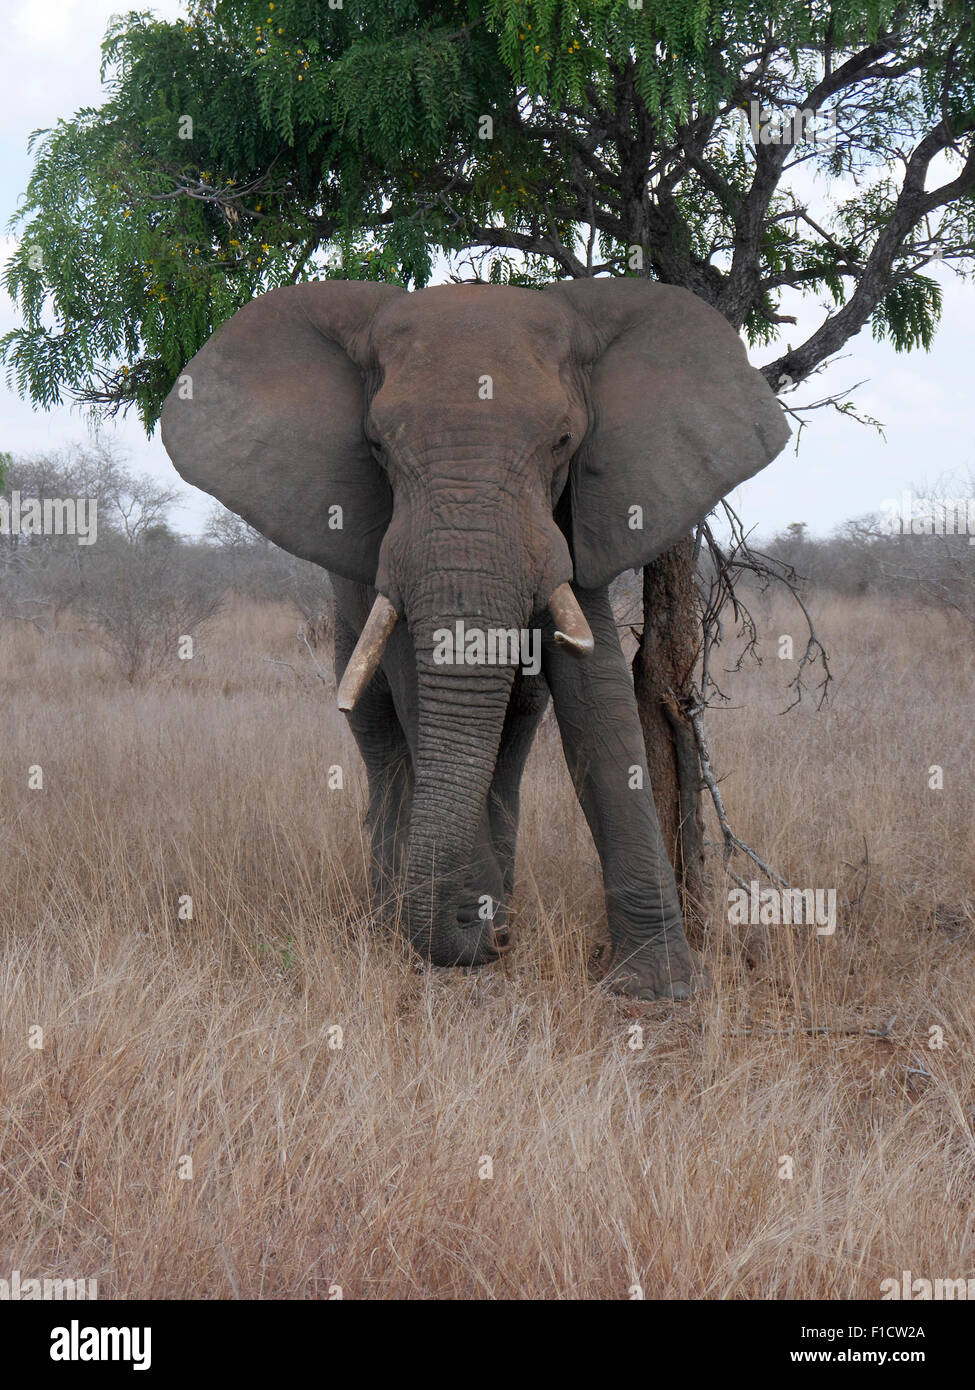 El elefante africano, Loxodonta africana, Sudáfrica, agosto de 2015 Foto de stock